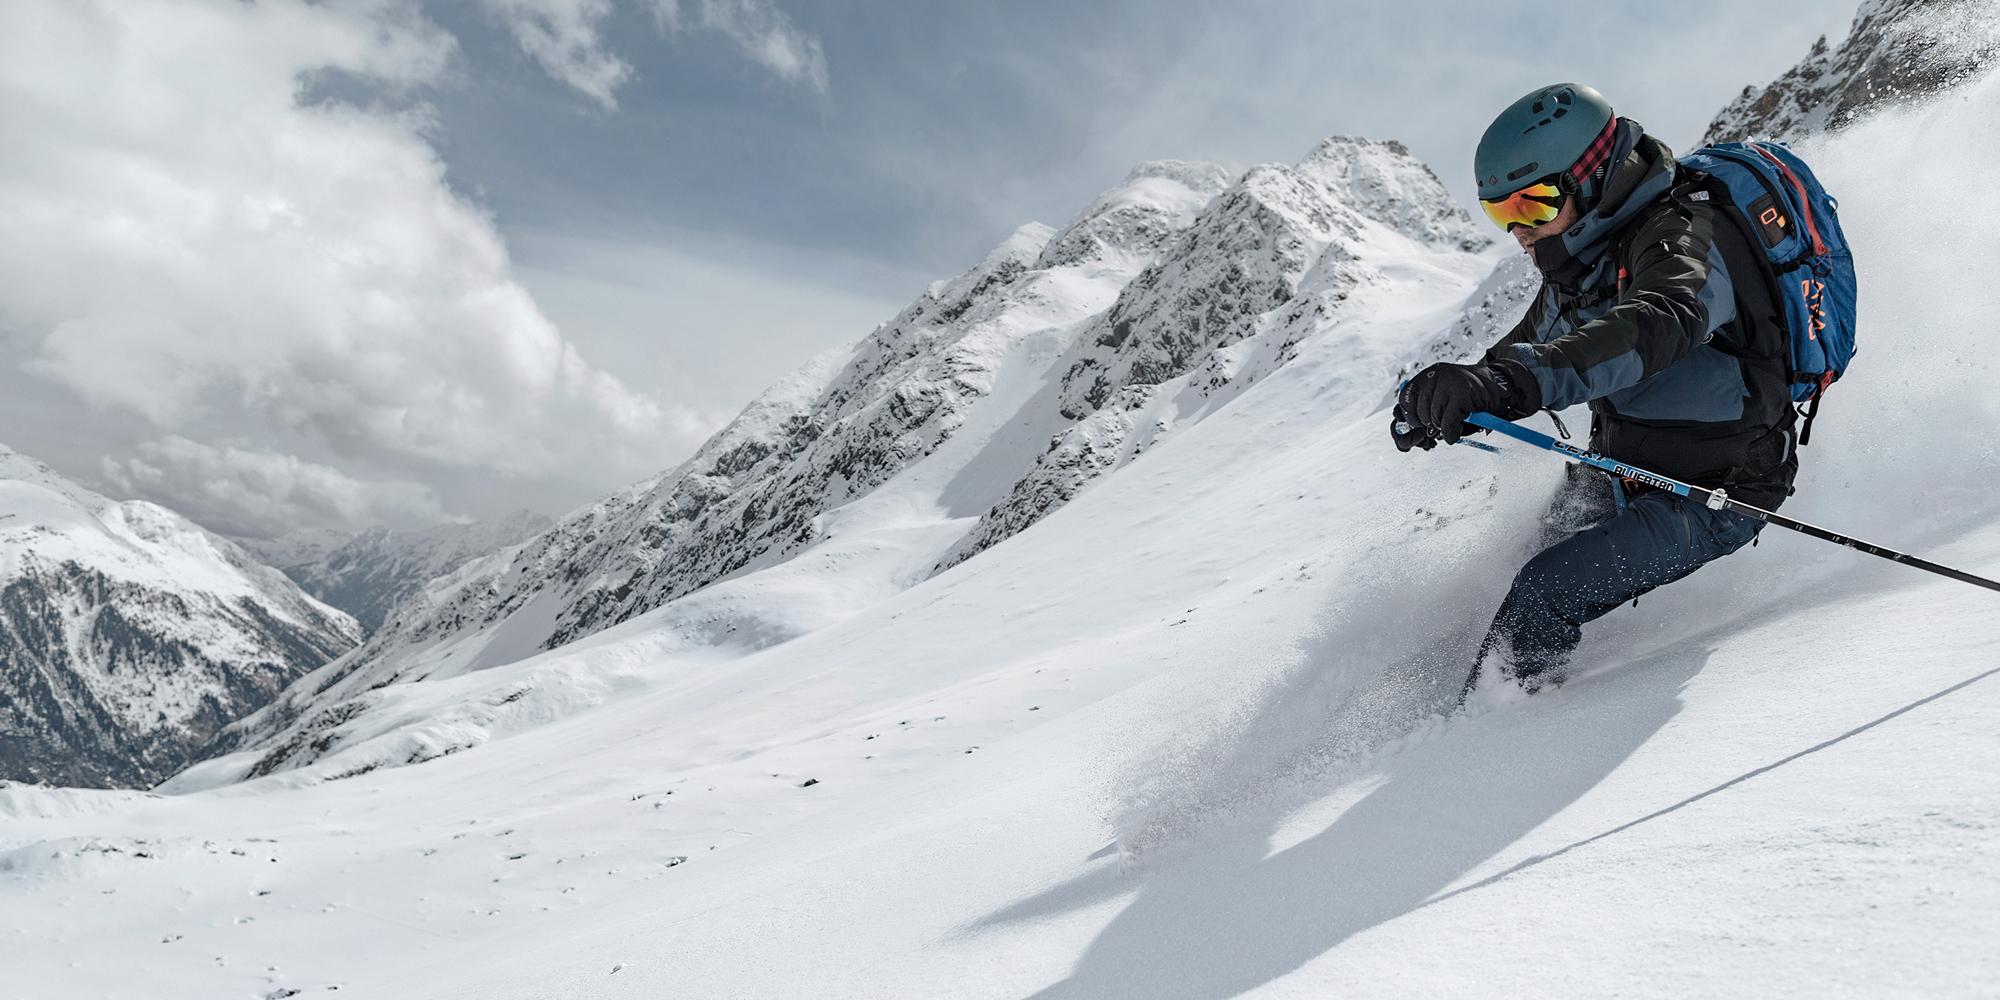 Ski Bindungen ideal für Schule Ski Reisen hält Ihre Ski tidy schwarz Haken Loop 2 Paar 